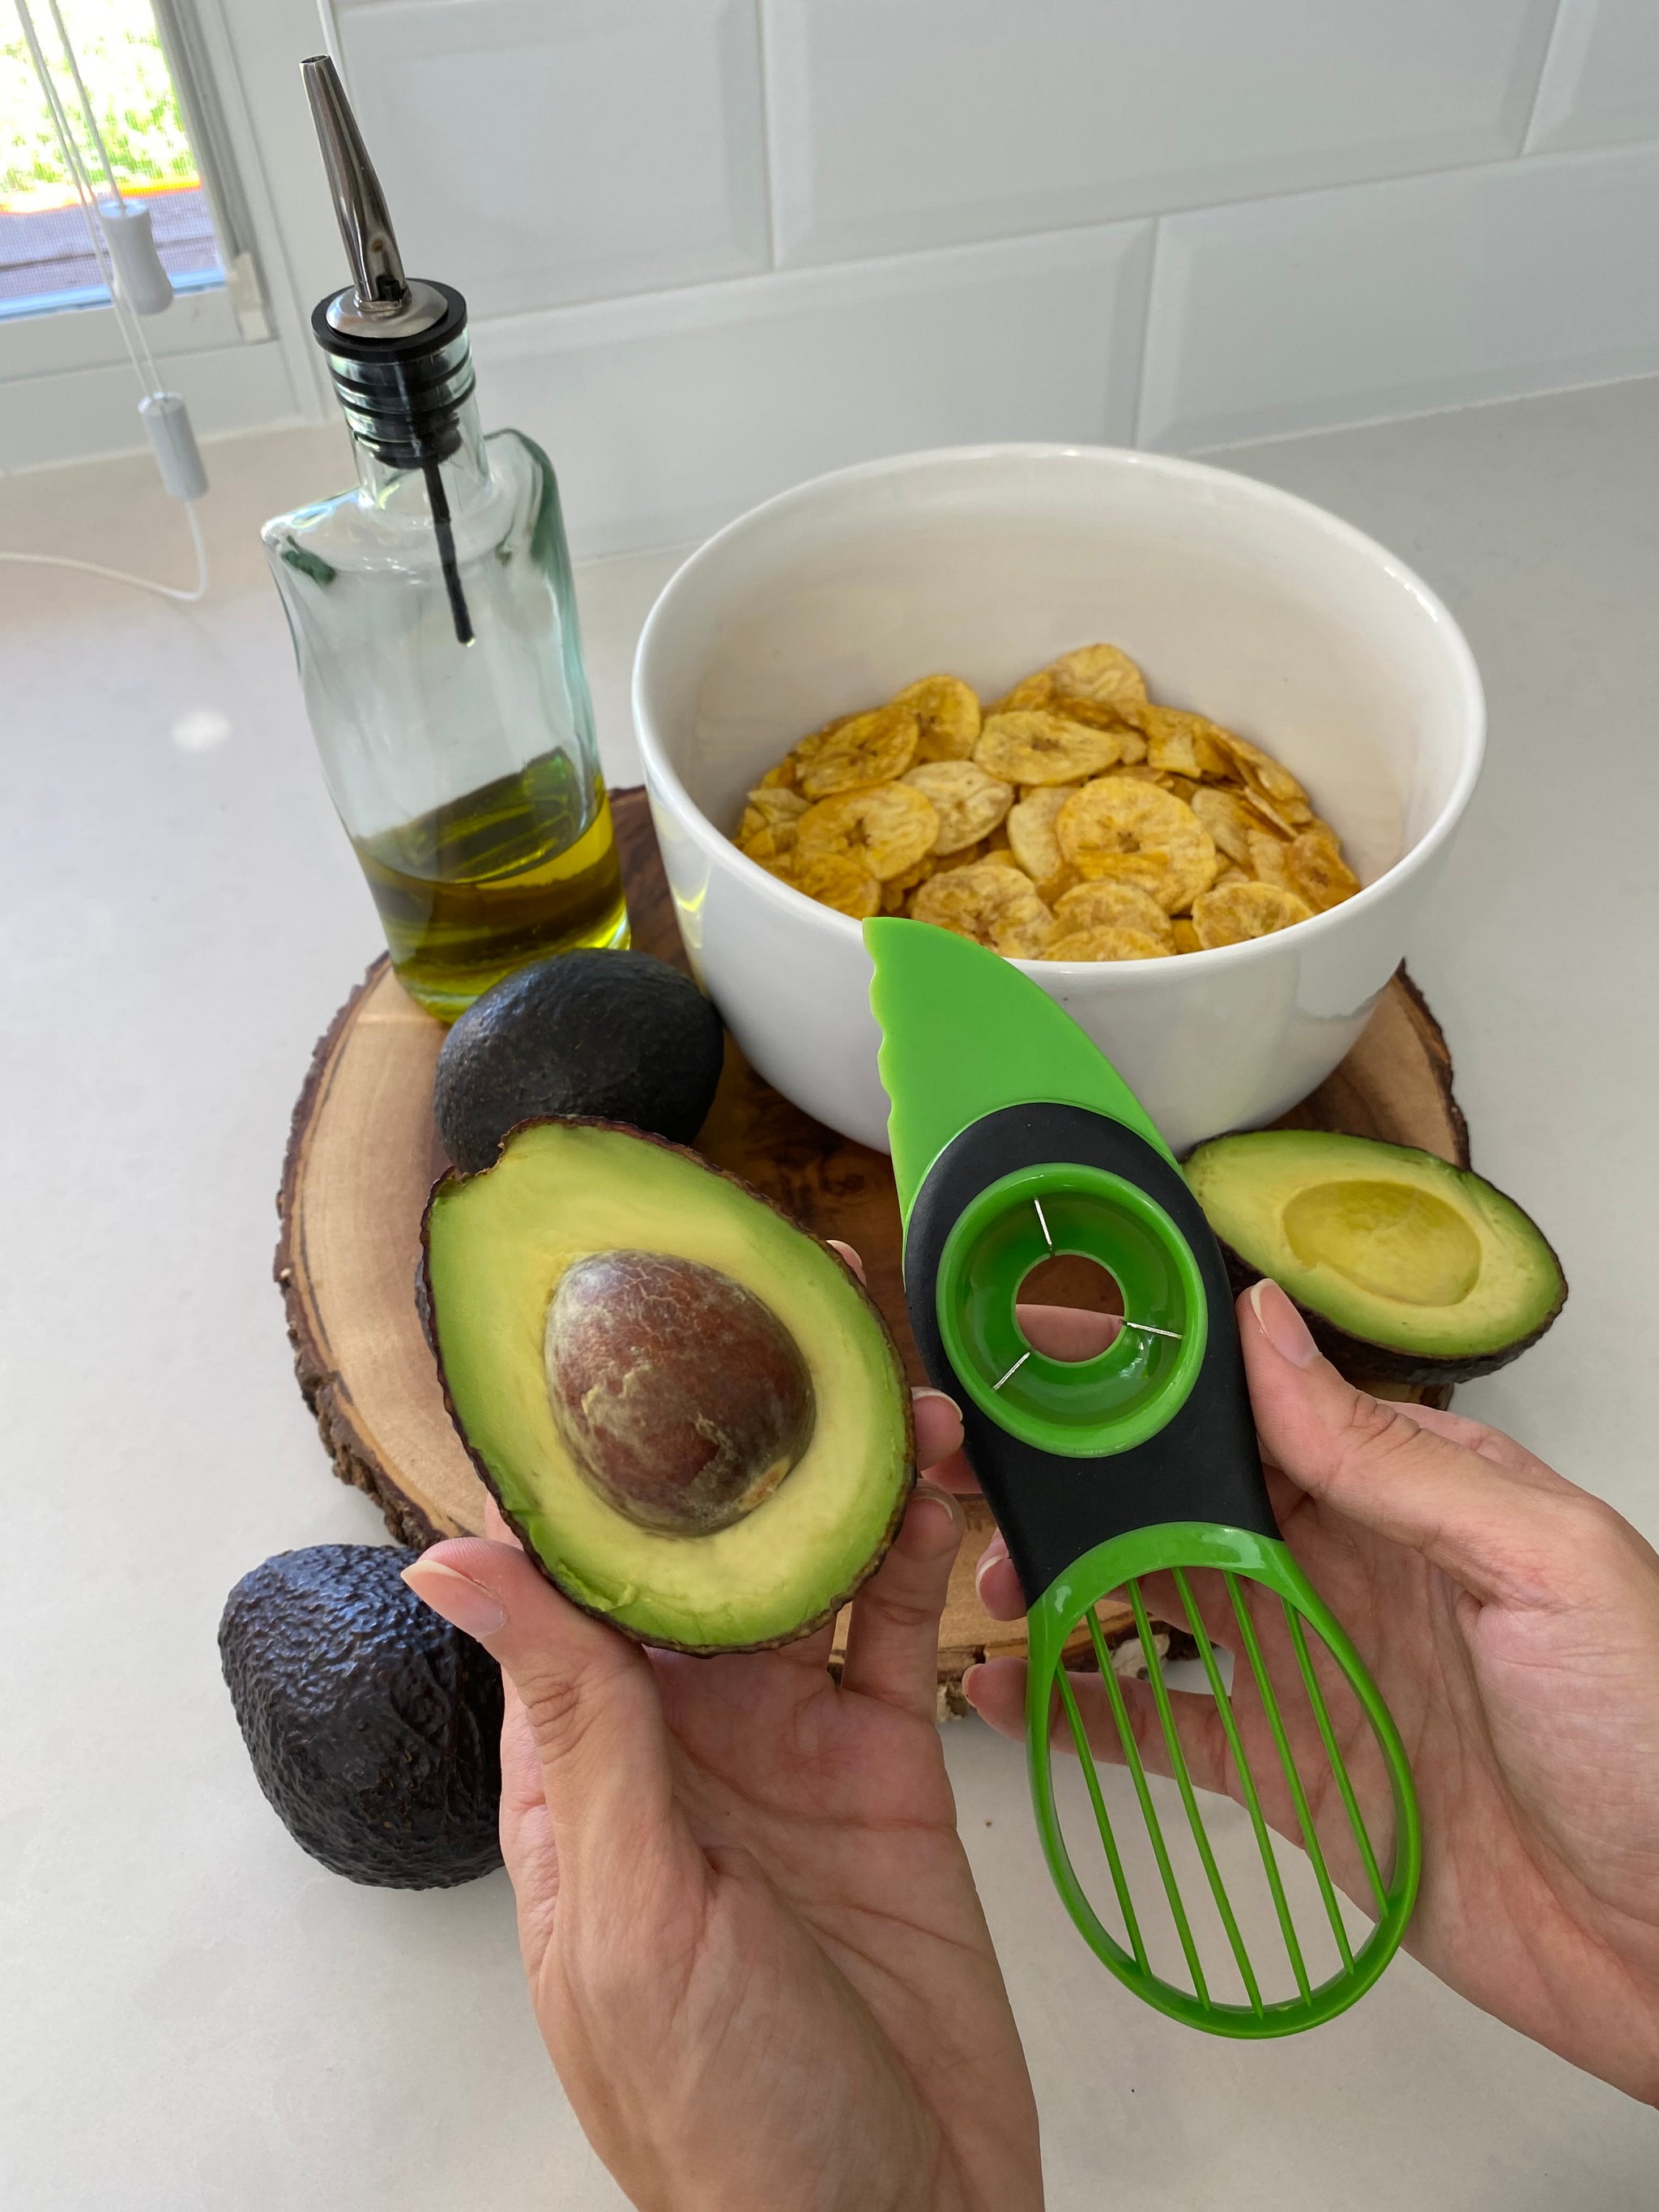 OXO 3-in-1 Avocado Slicer, Fruit Tools